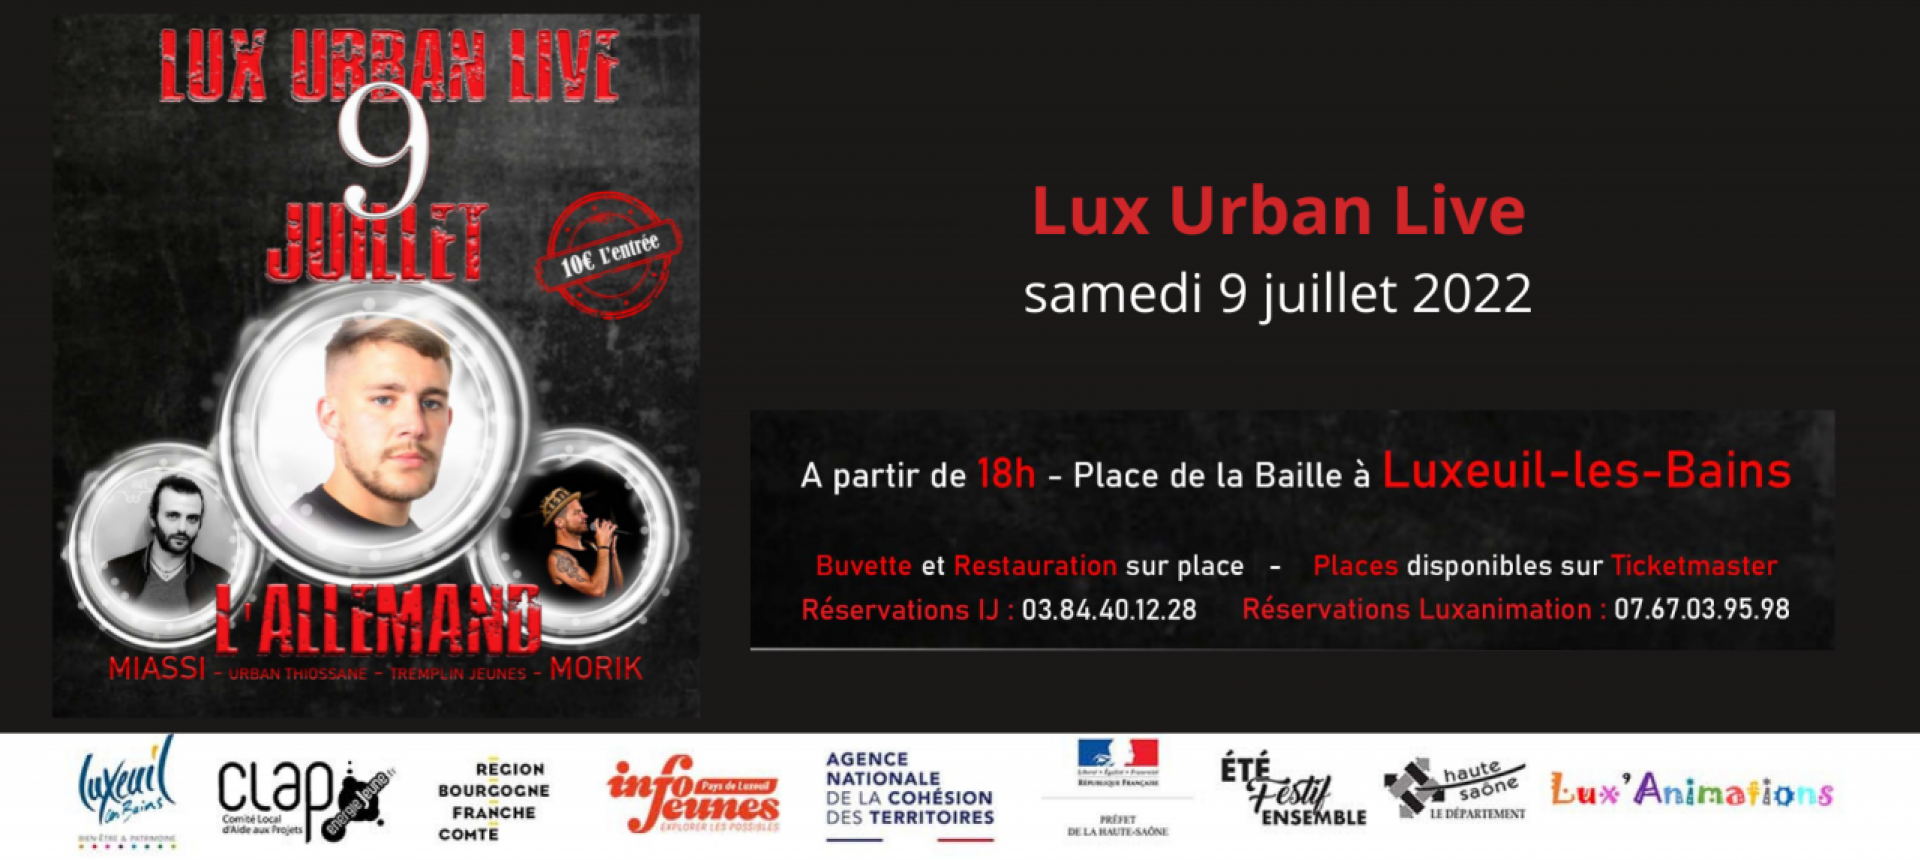 Lux Urban Live le 9 juillet 2022 à Luxeuil-les-bains